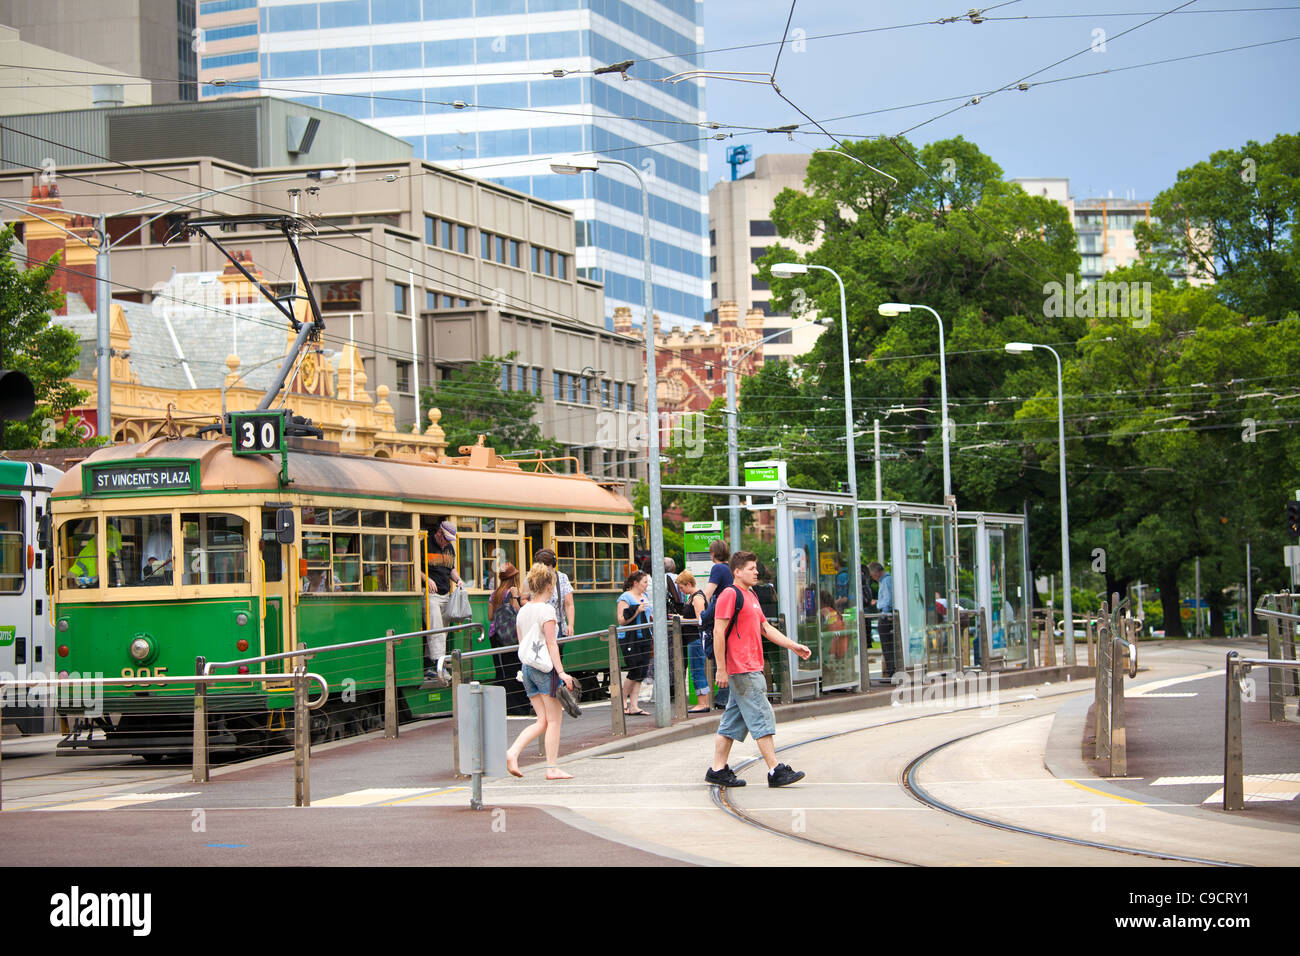 Melbourne-Sonnentag auf der Stadt öffentliche Verkehrsmittel Systeme gezeigt kostenlose Tourist Straßenbahnen in den Docklands. Stockfoto